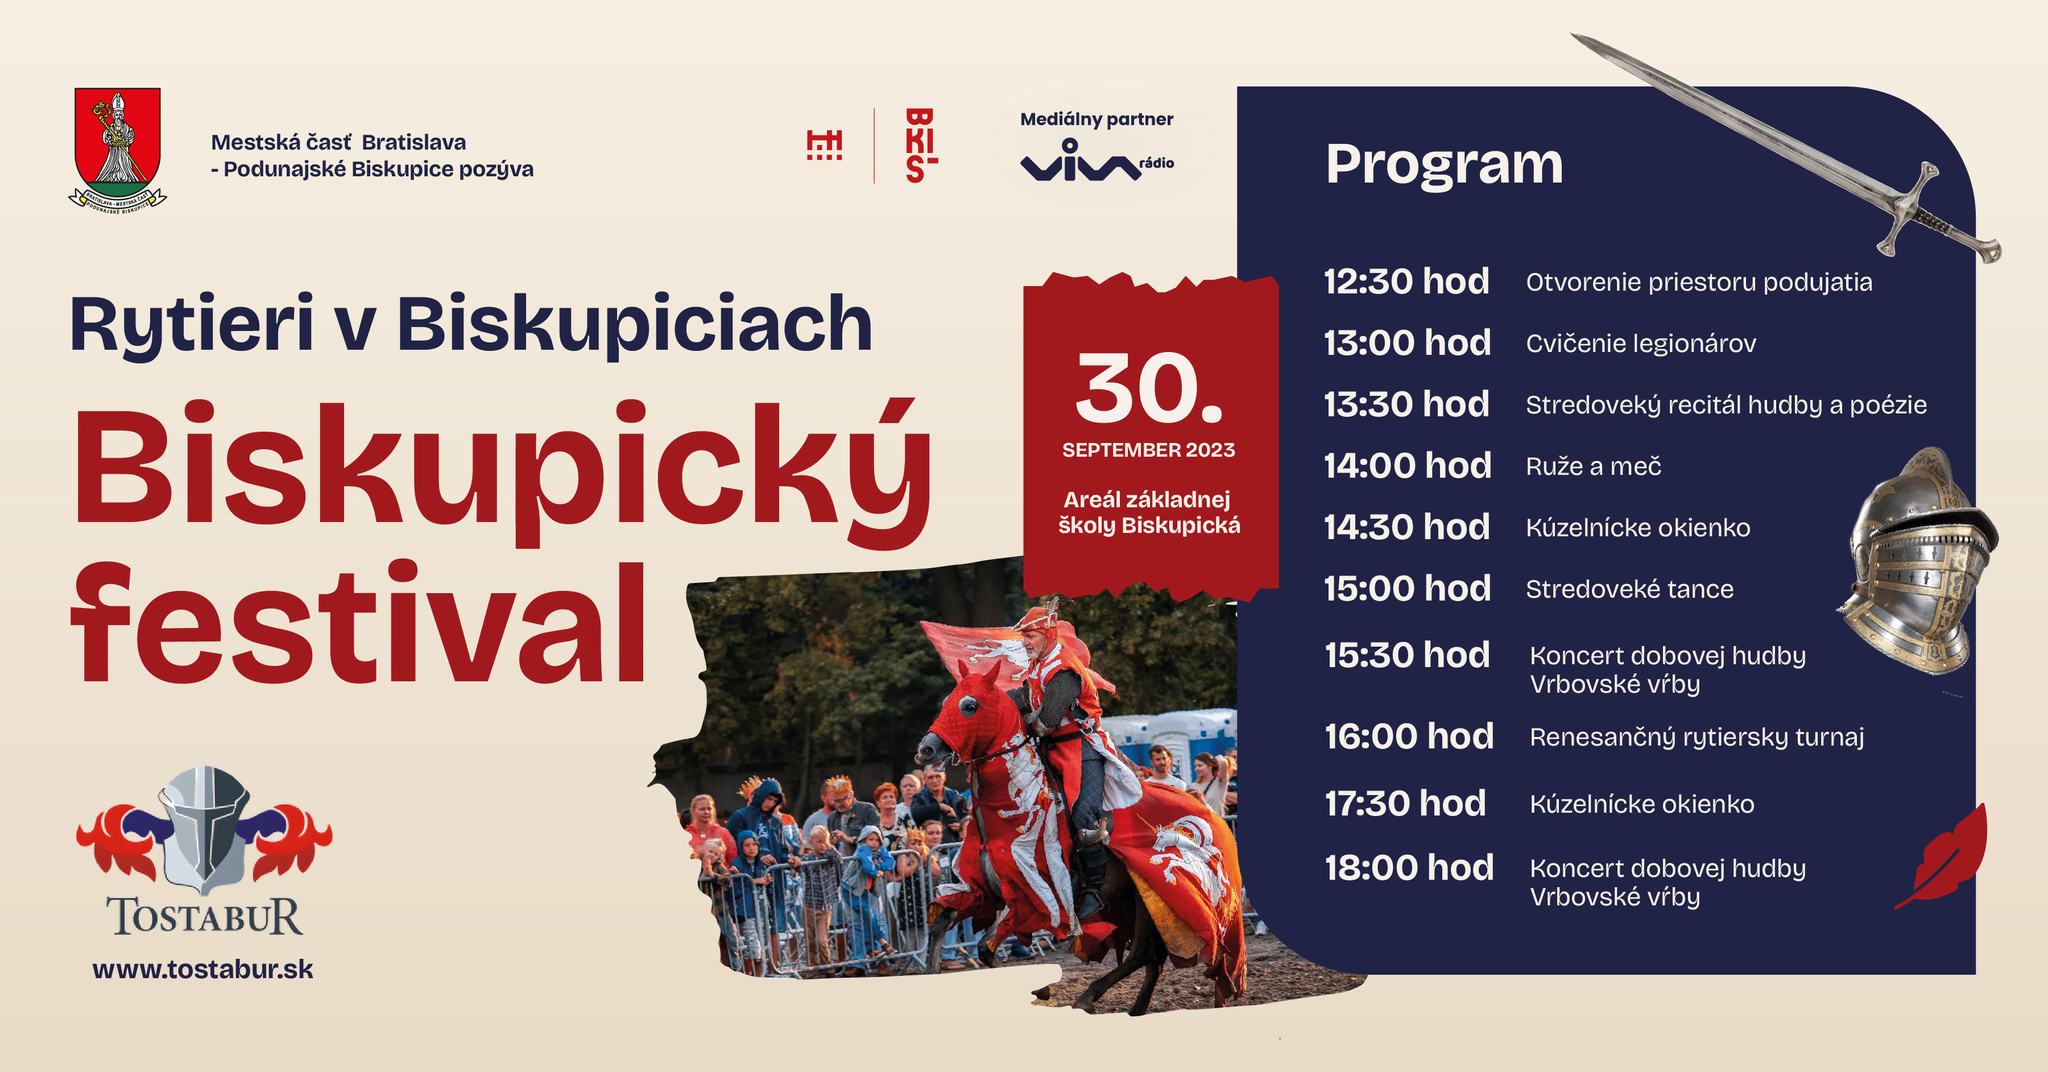 Biskupick festival 2023 Podunajsk Biskupice - Rytier v Biskupiciach